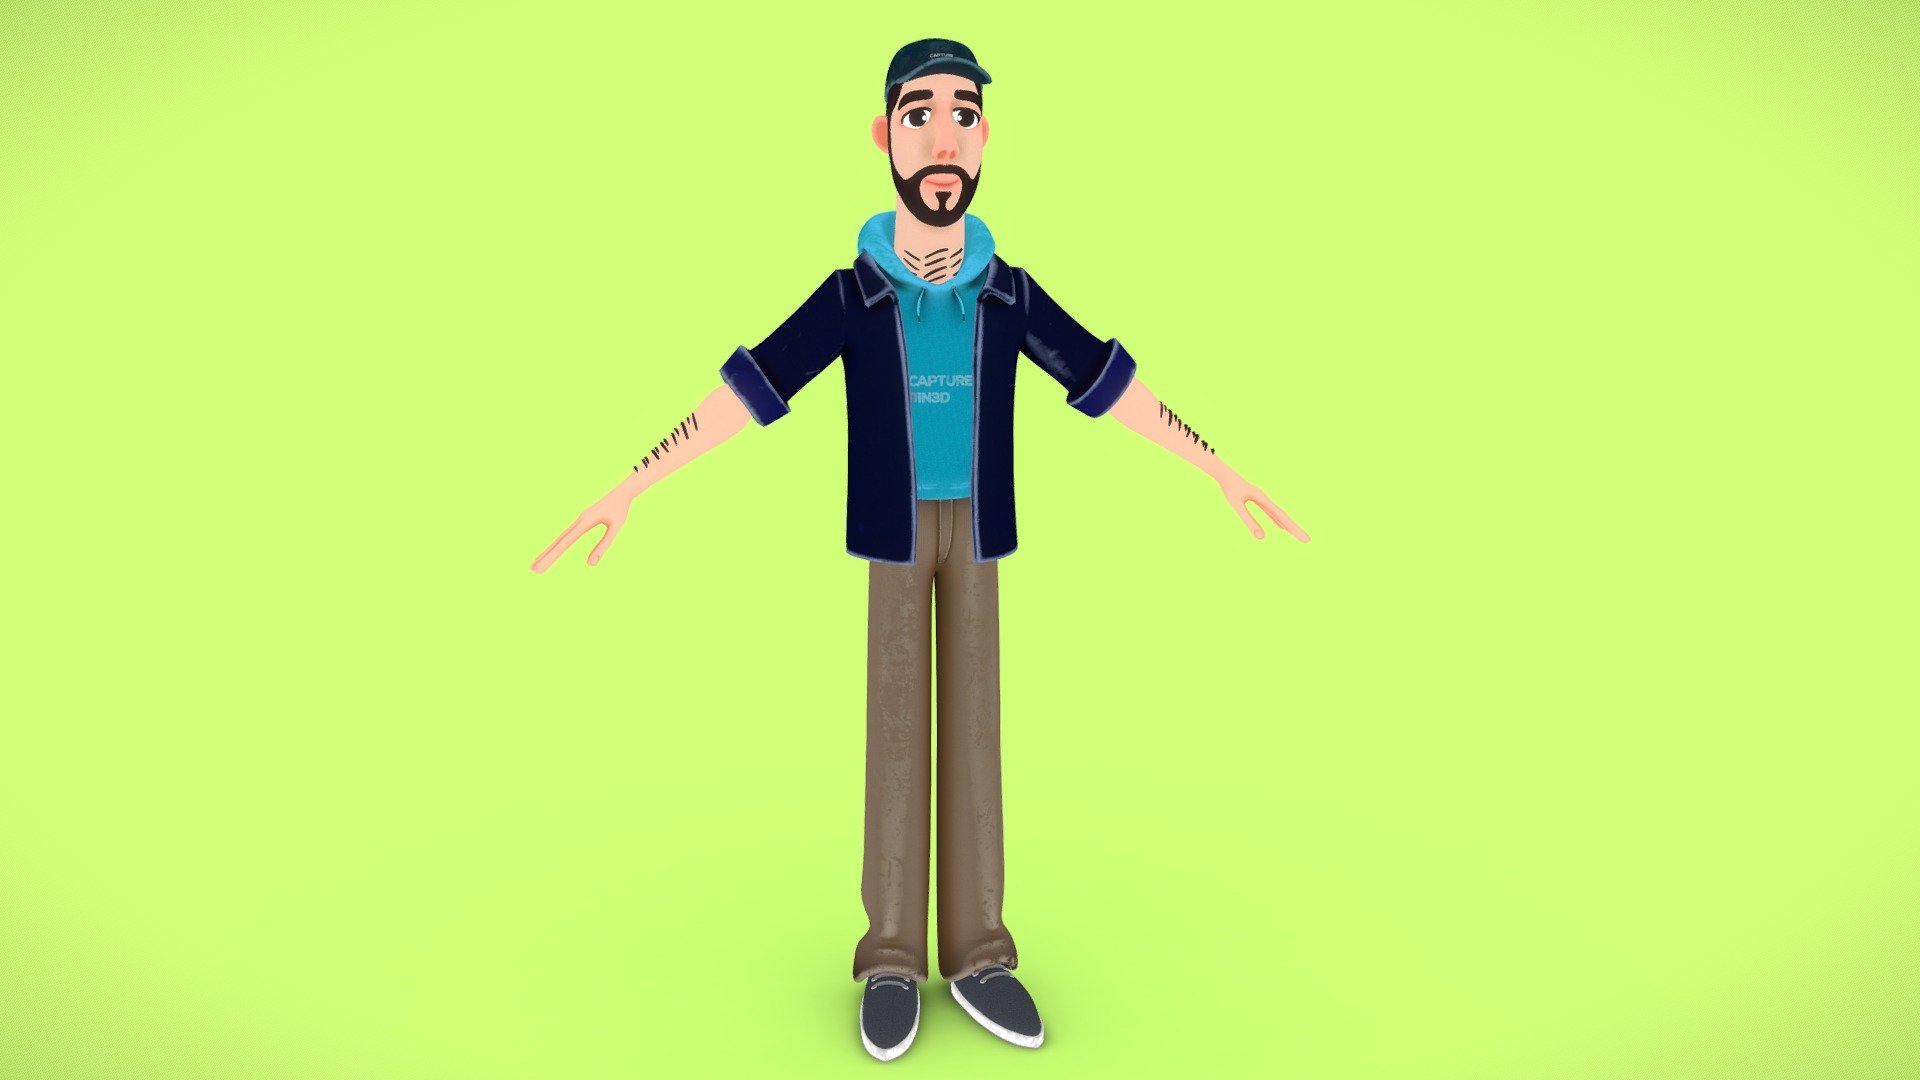 Ryan's Cartoon character from Capture It in 3D Team - CI3D Ryan Cartoon - 3D model by gustavoavila3d 3d model